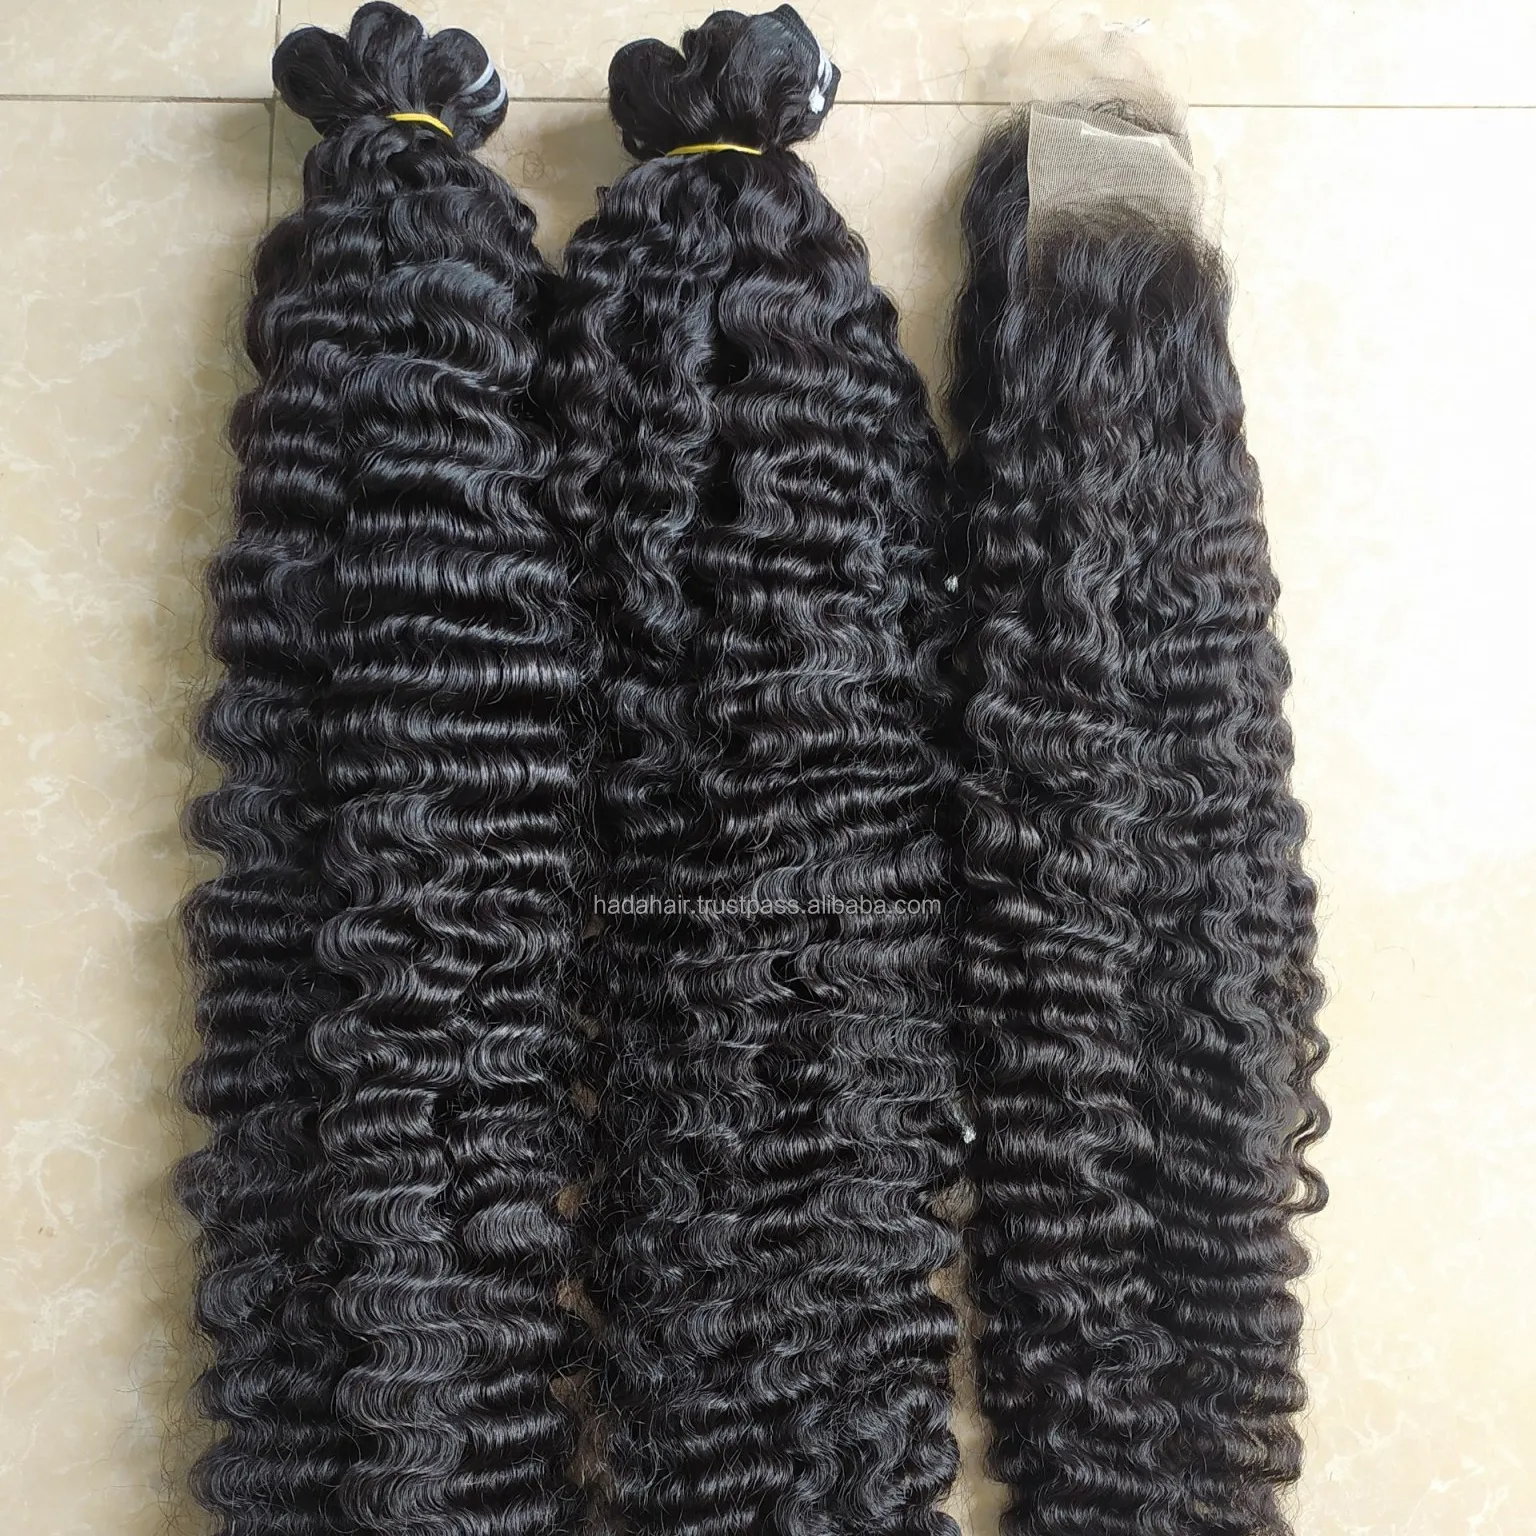 Extensões de cabelo encaracolado borgonho longo, peruca para hadahair viet namorado, fechamento frontal de 6 a 38 polegadas